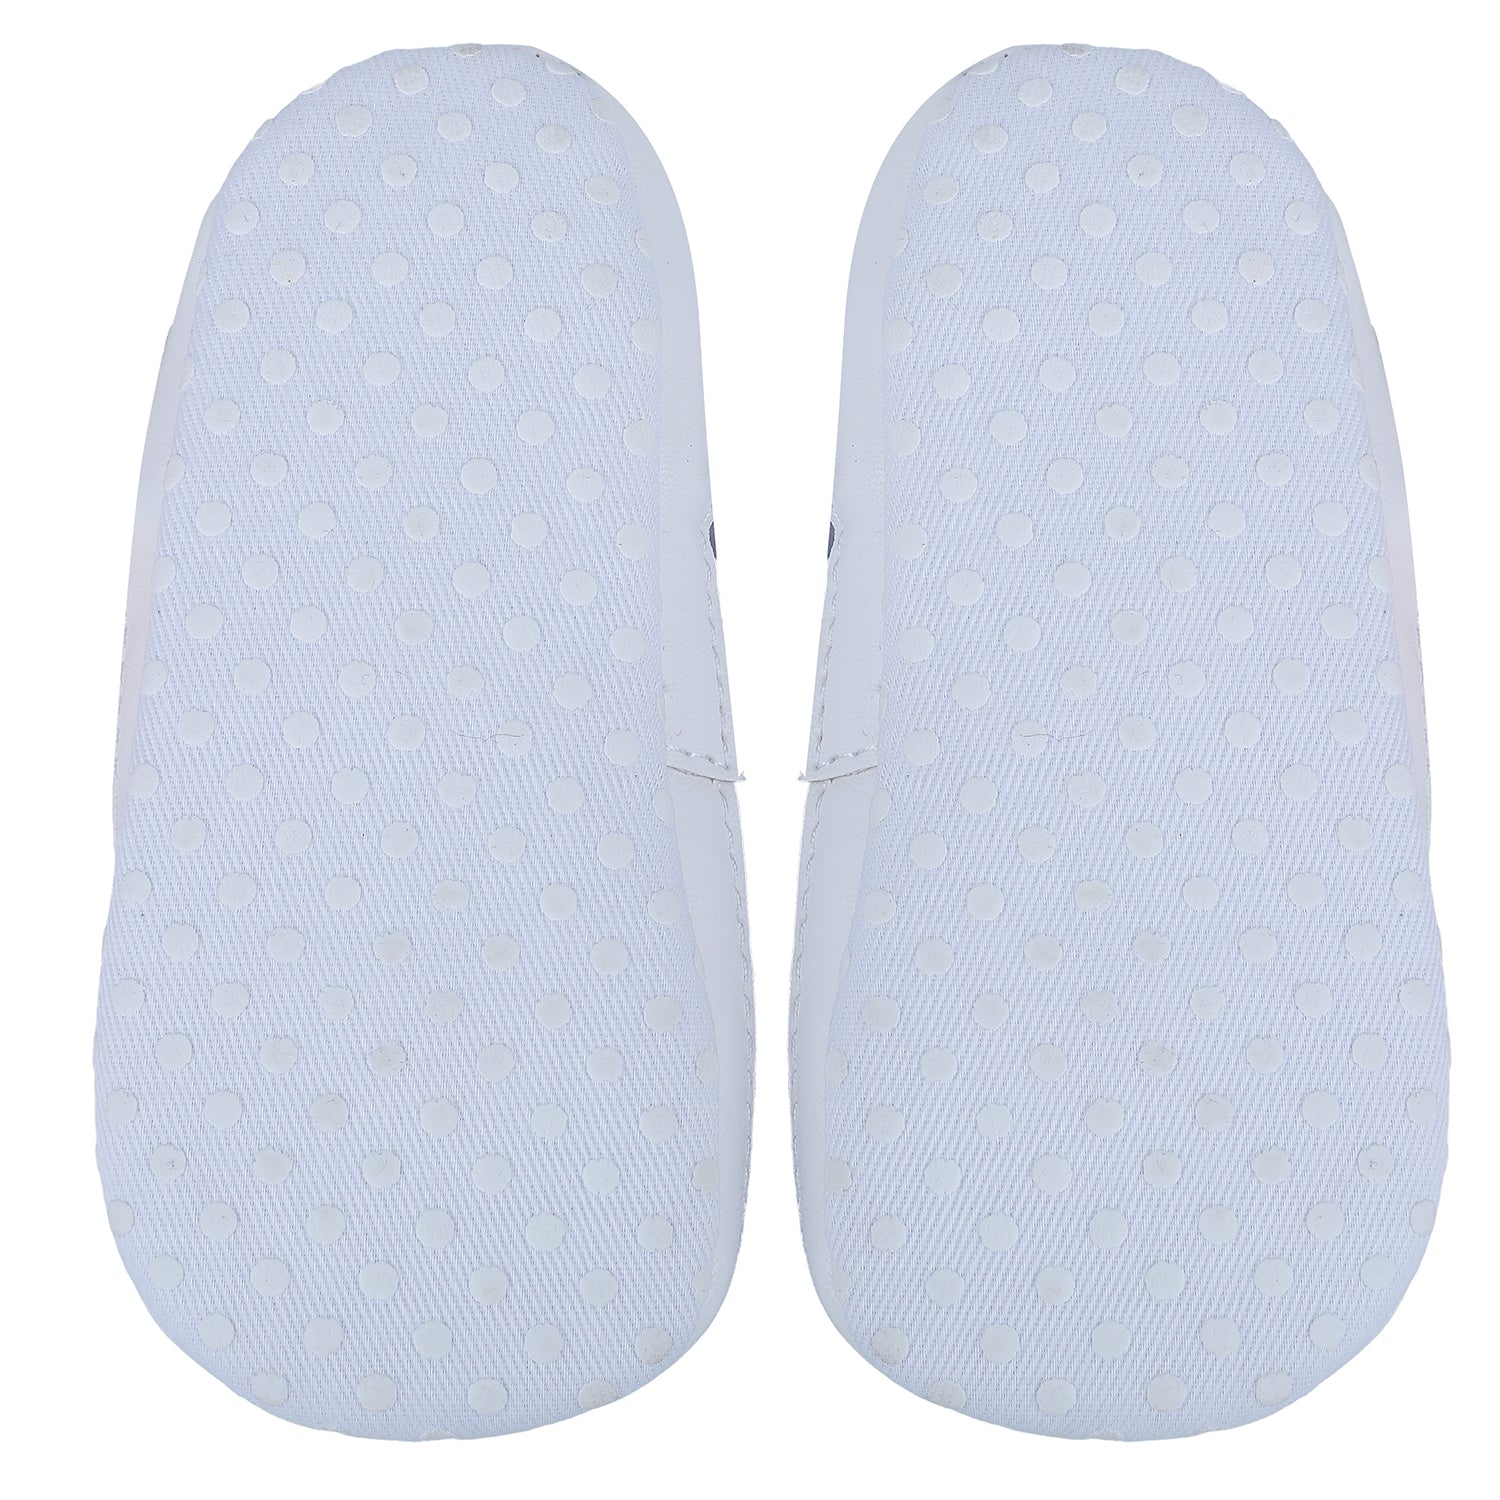 Star Premium Anti-Slip Velcro Hook-Loop Sandal Booties - White - Baby Moo